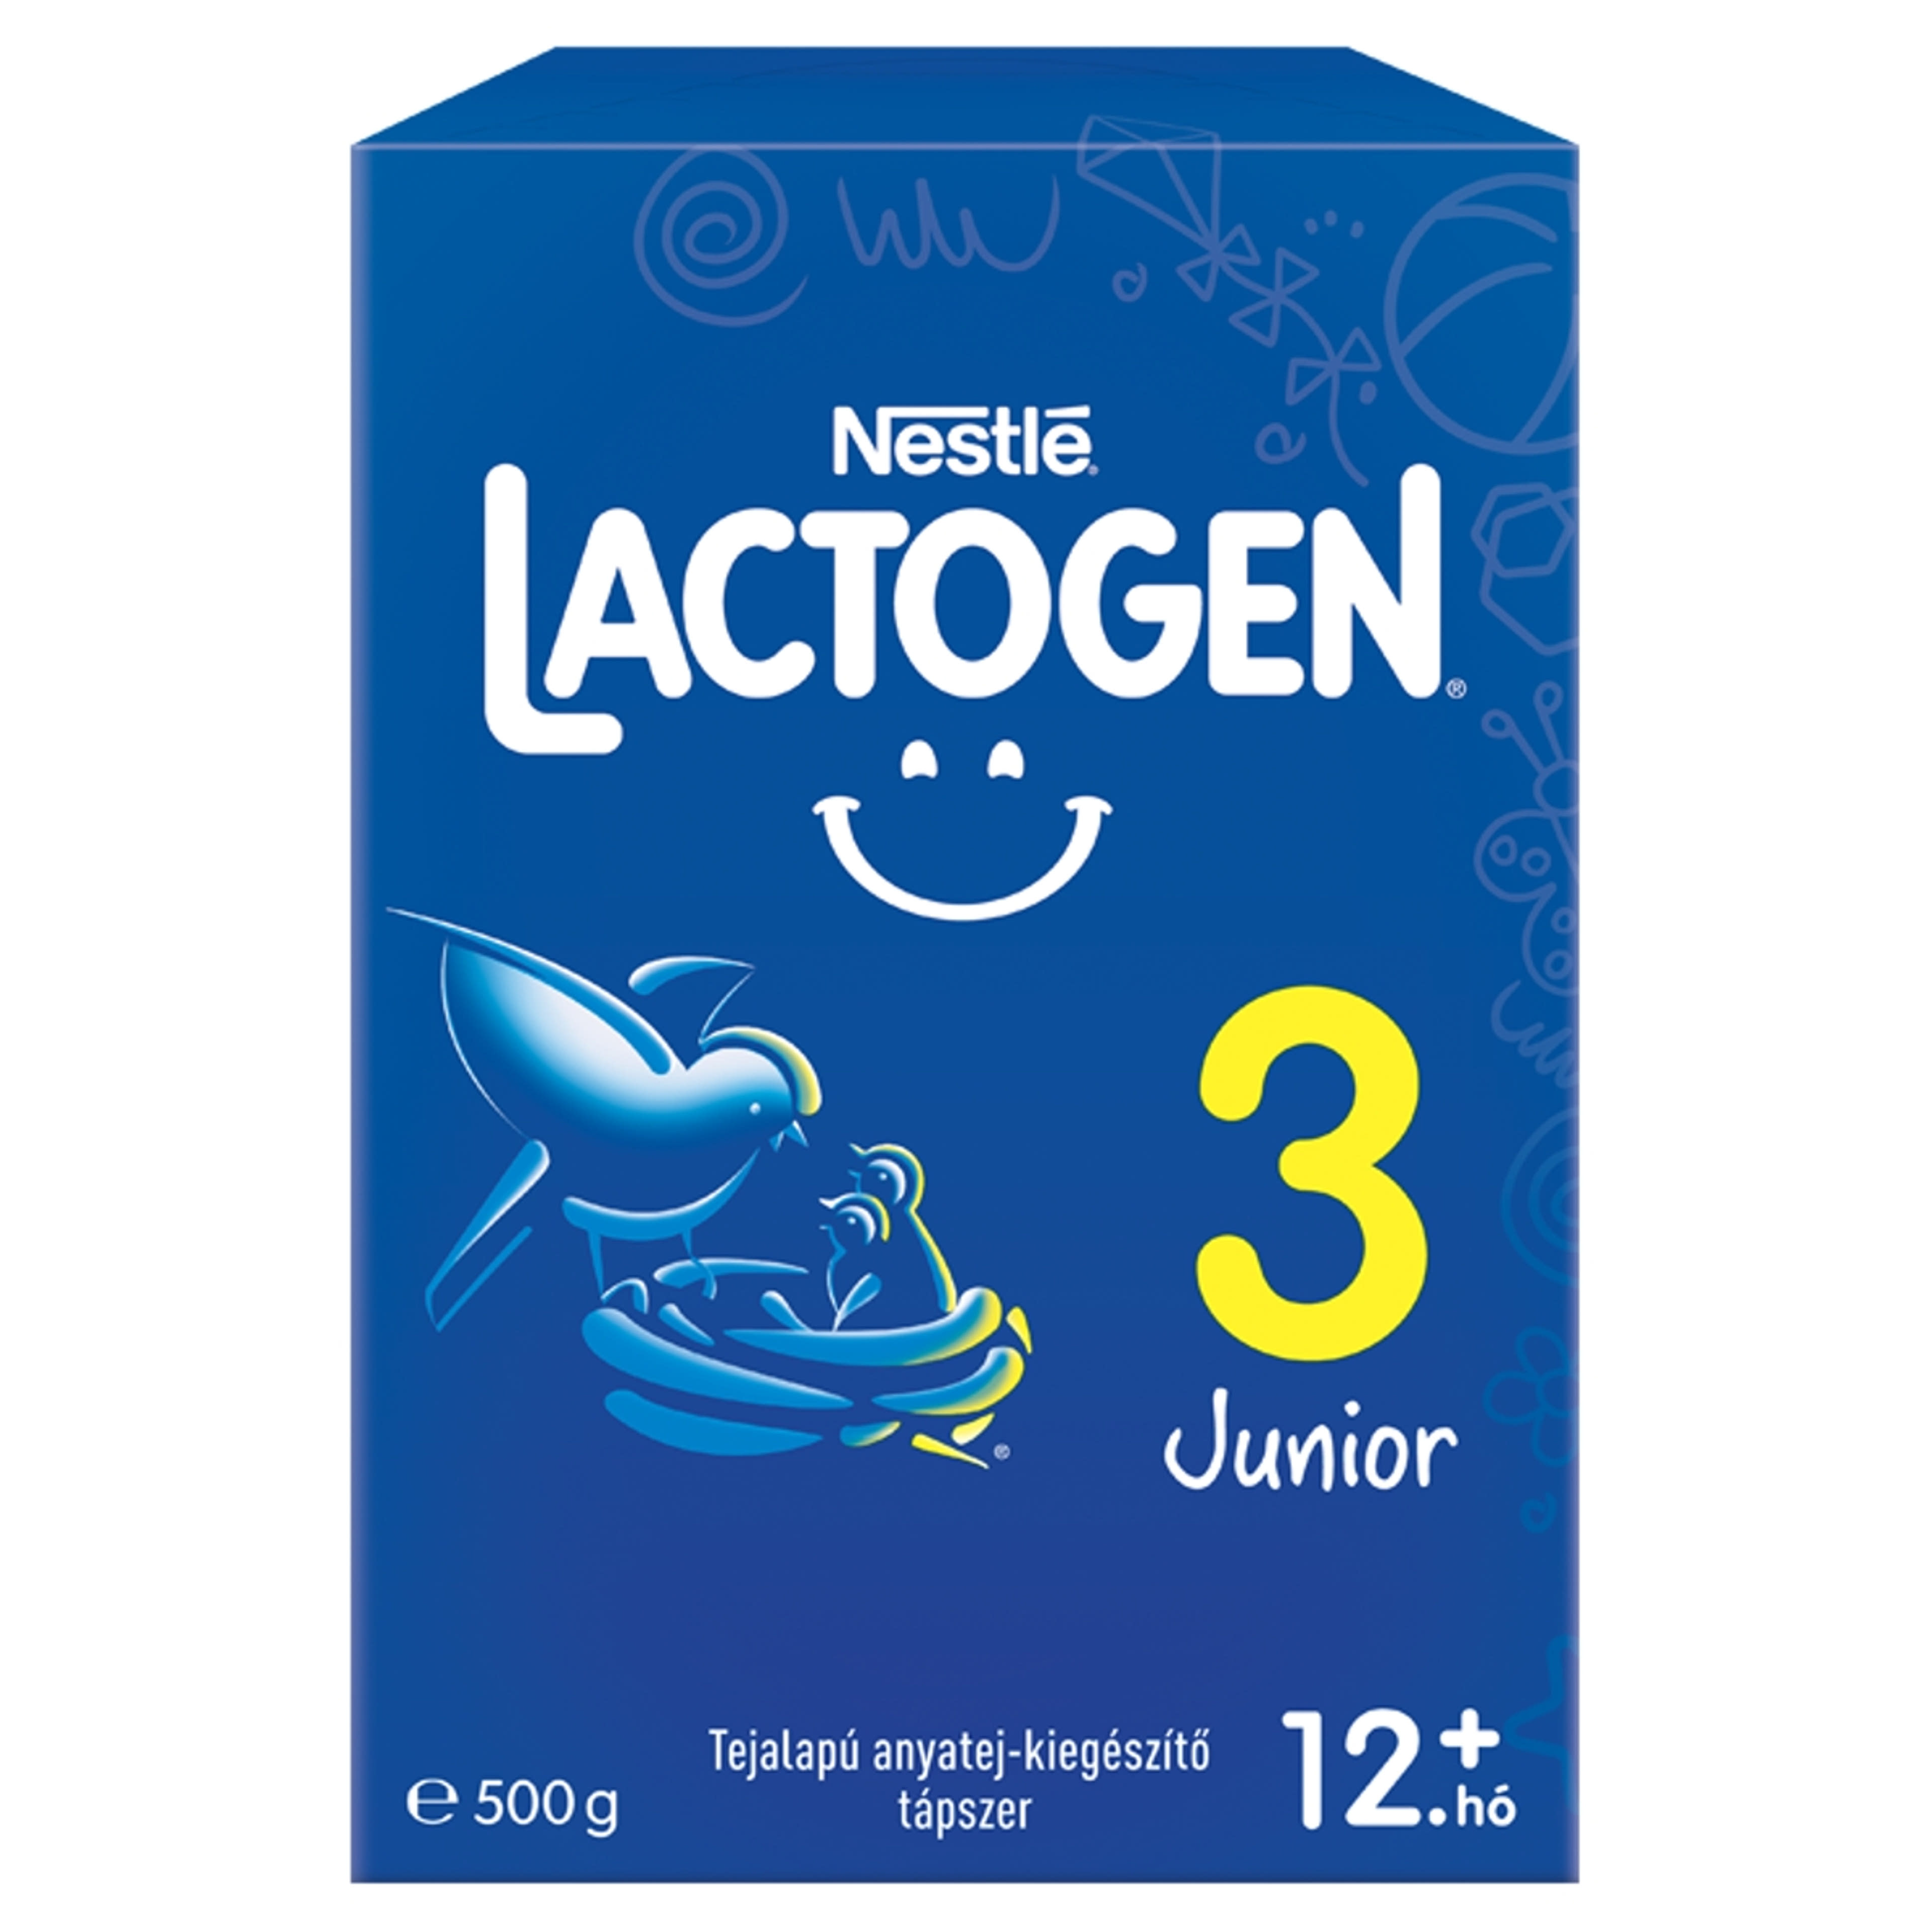 Lactogen 3 Junior tejalapú anyatej-kiegészítő tápszer 12 hónapos kortól - 500 g